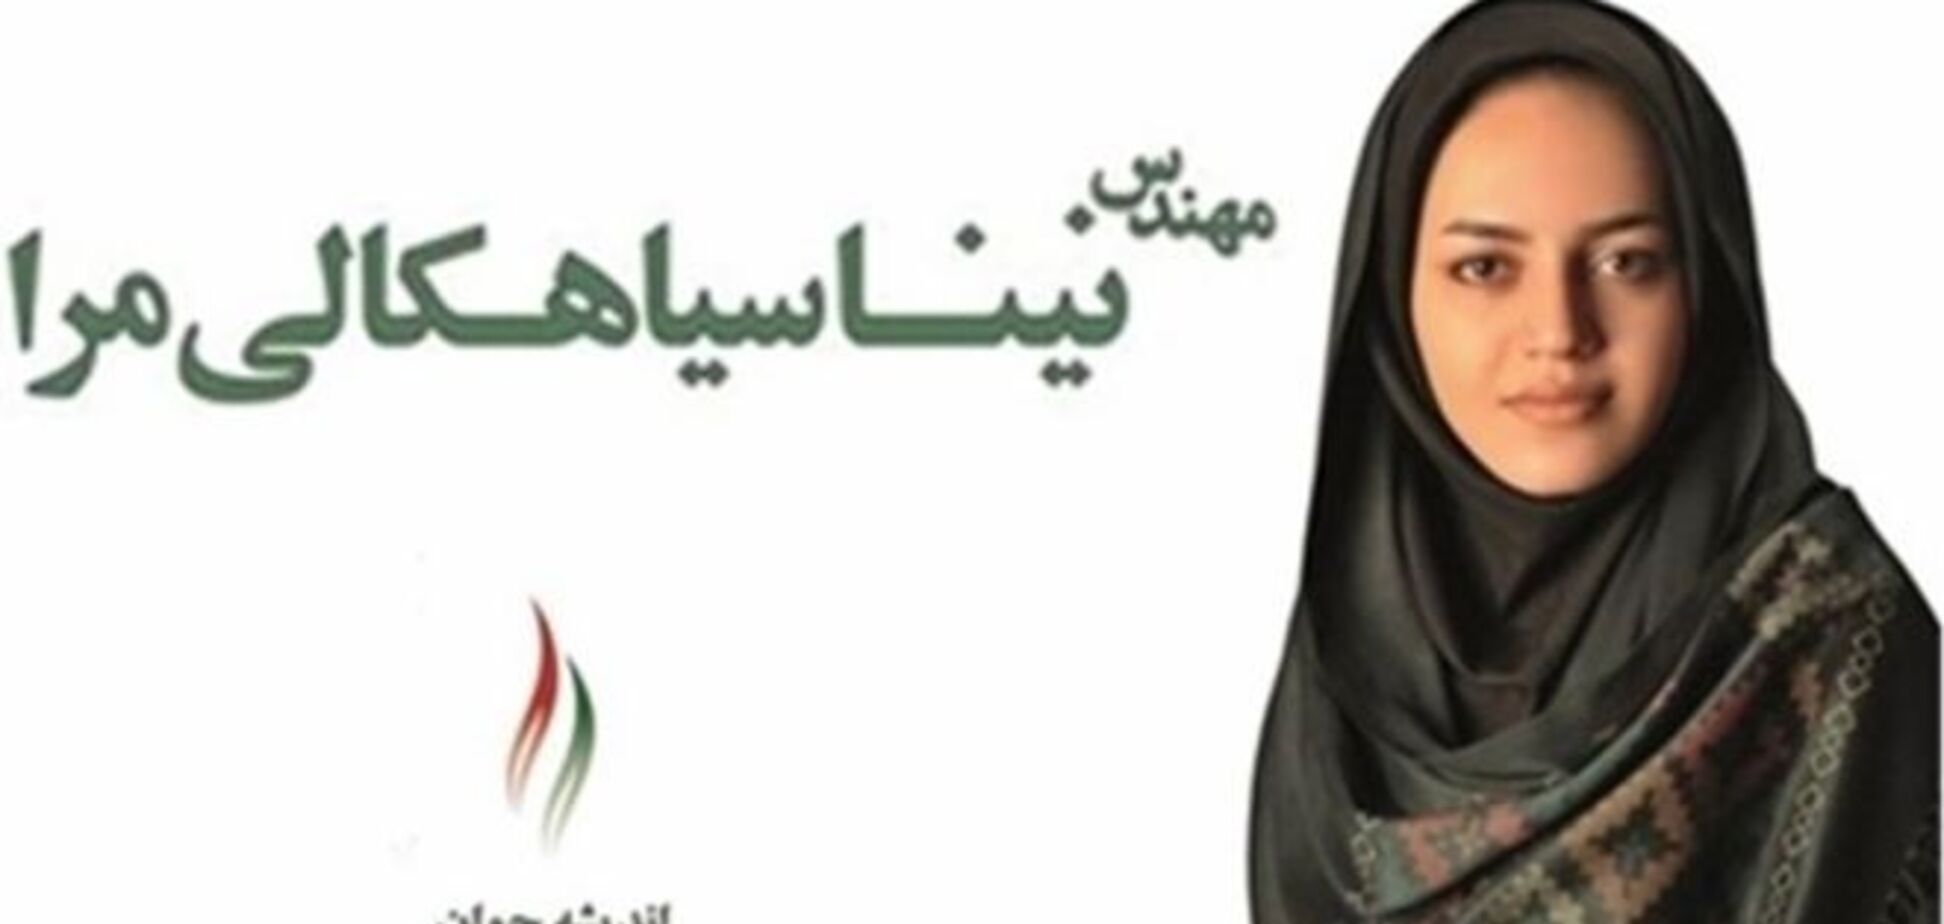 Иранской девушке запретили участвовать в госдеятельности из-за красоты